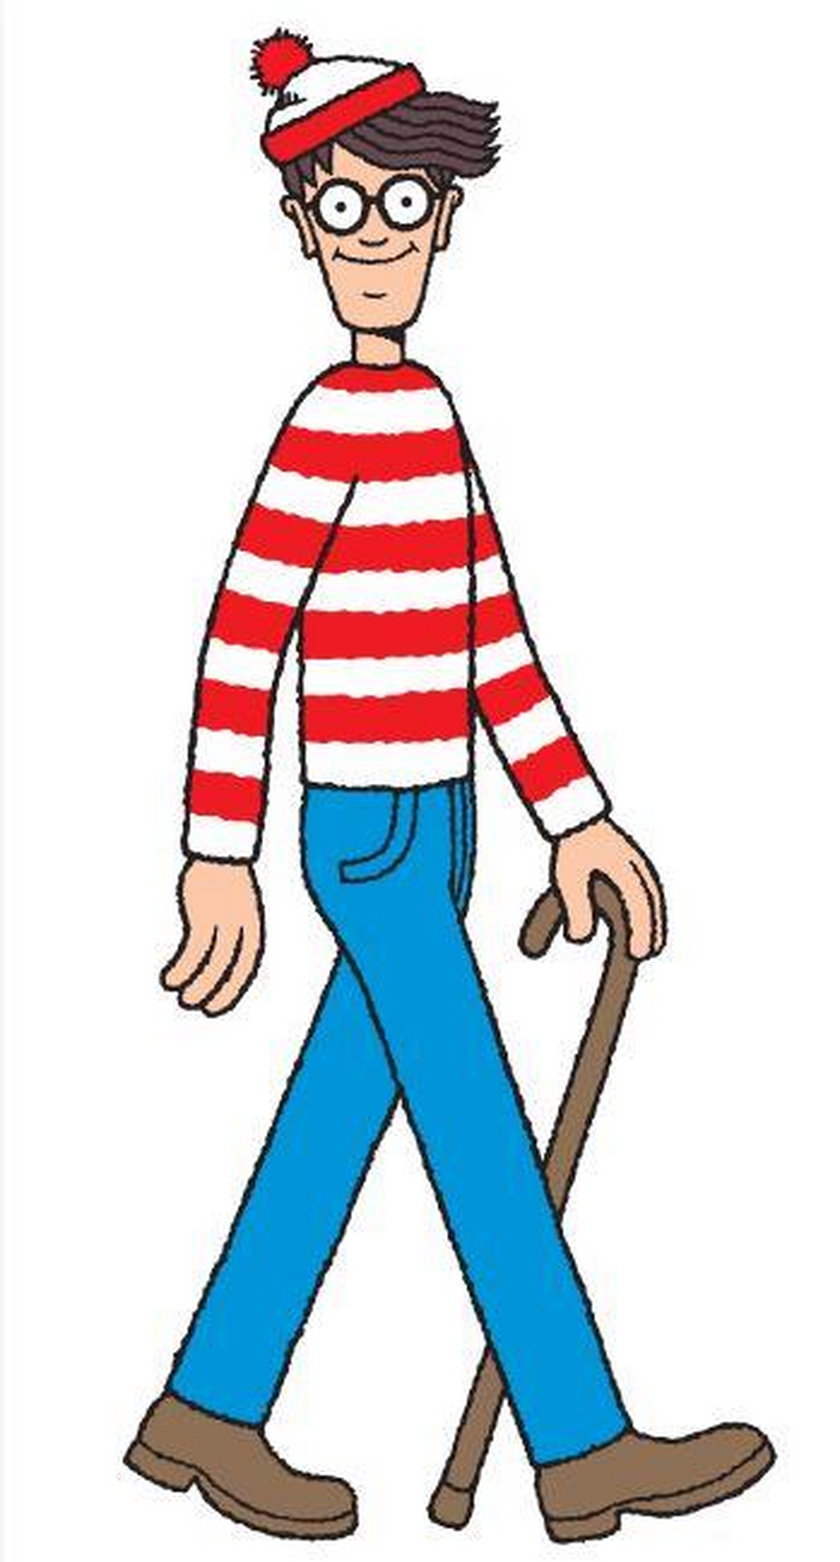 "Gdzie jest Wally?"